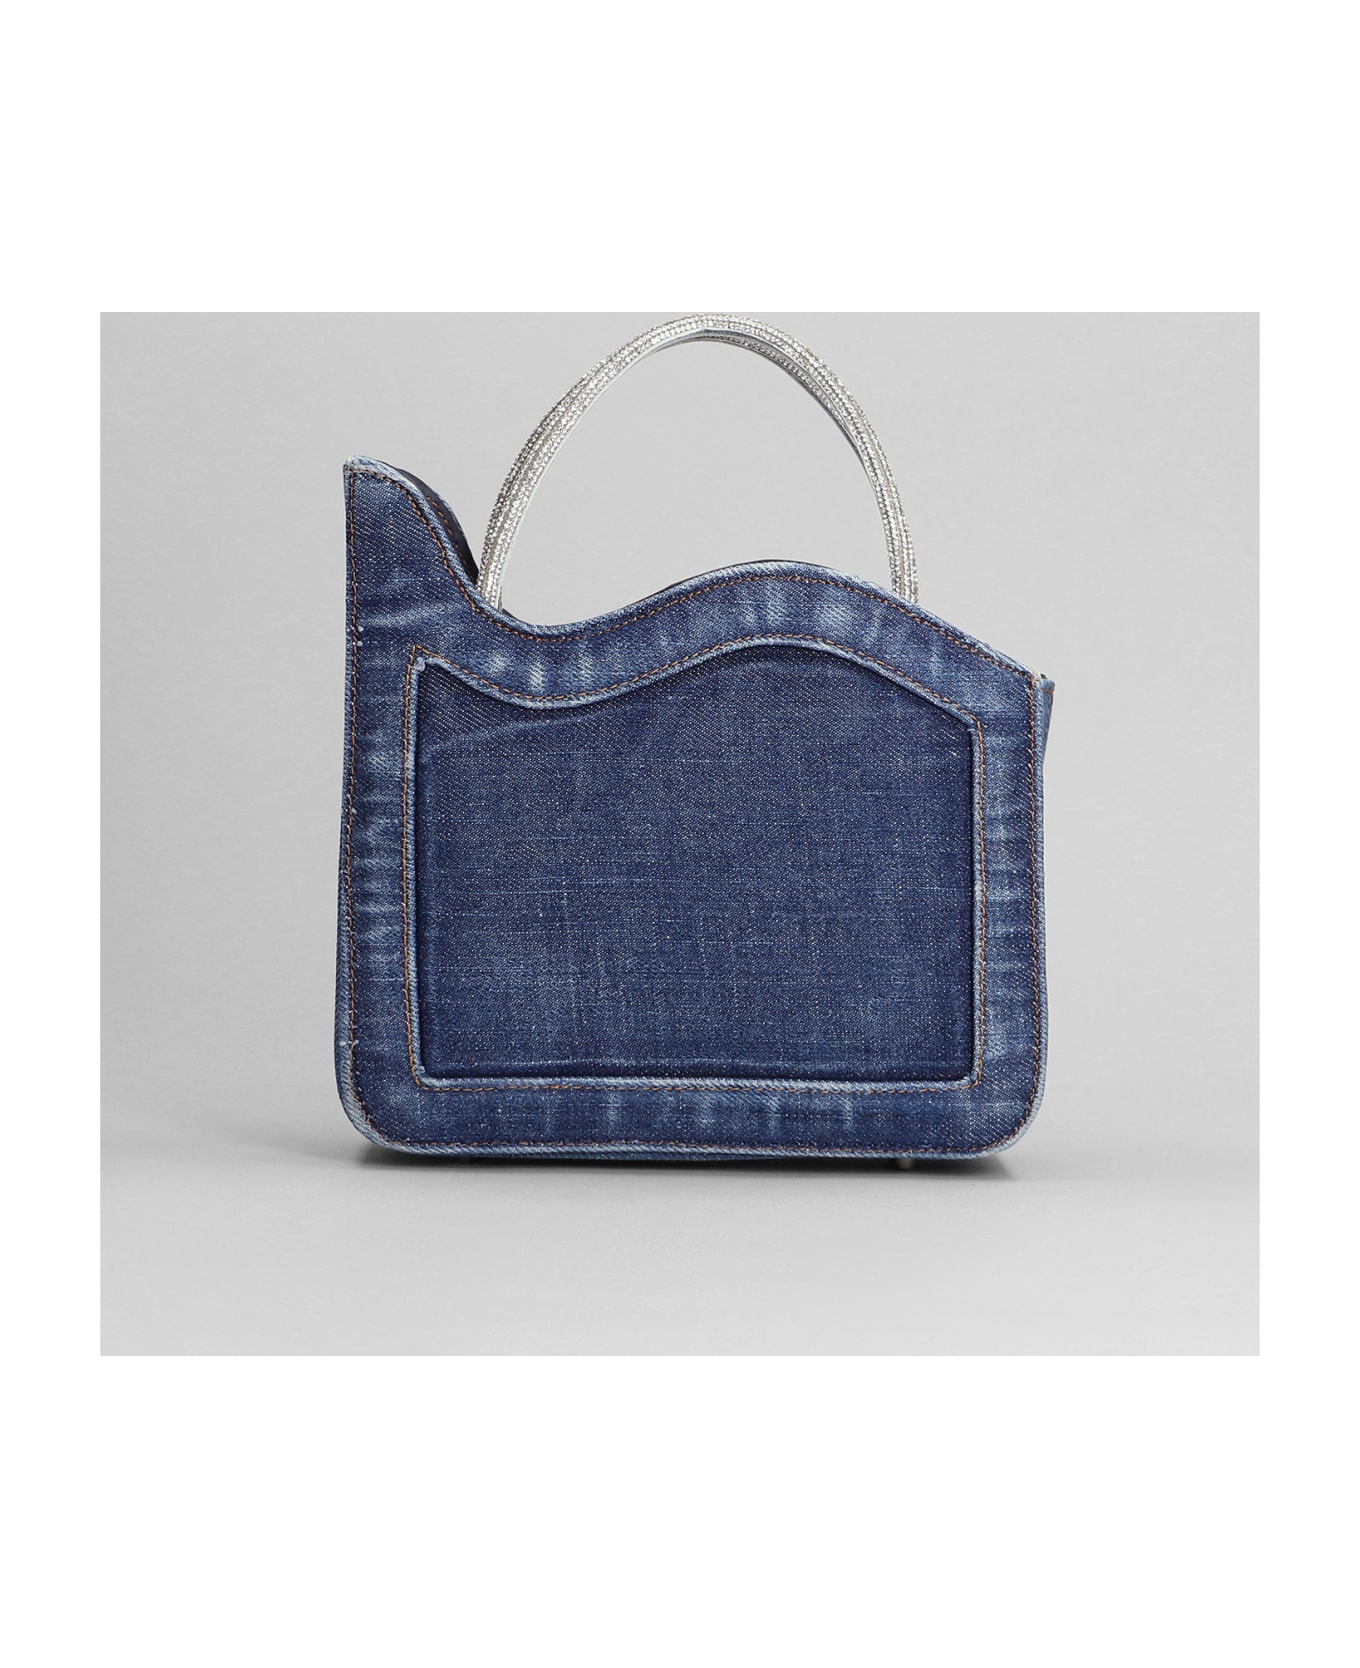 Le Silla Ivy Shoulder Bag In Blue Denim - blue